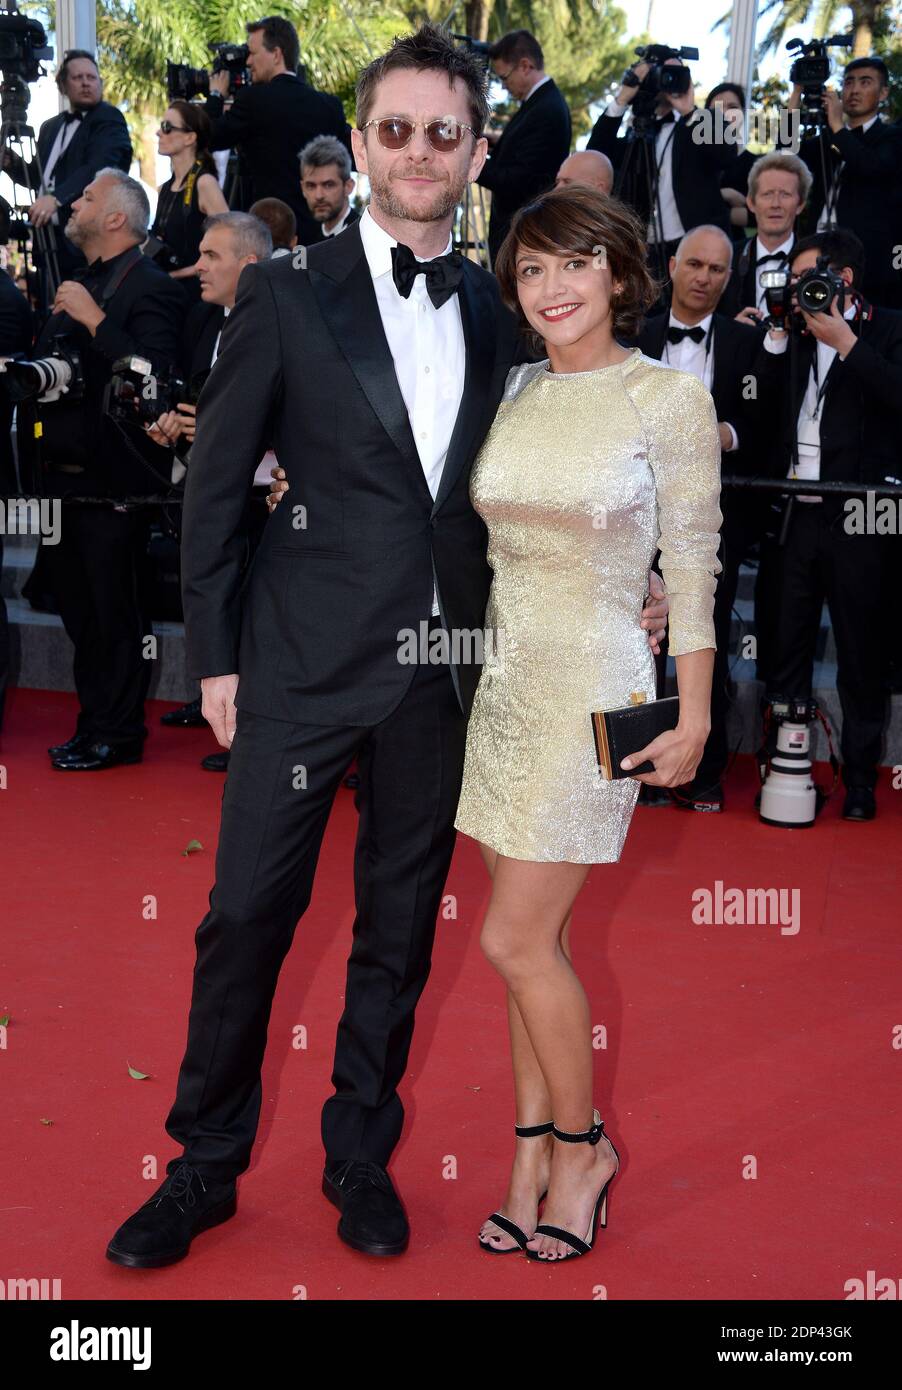 Jamie Hewlett und Emma de Caunes besuchen die Vorführung von "Youth" beim 68. Filmfestival in Cannes am 20. Mai 2015 in Cannes, Frankreich. Foto von Lionel Hahn/ABACAPRESS.COM Stockfoto